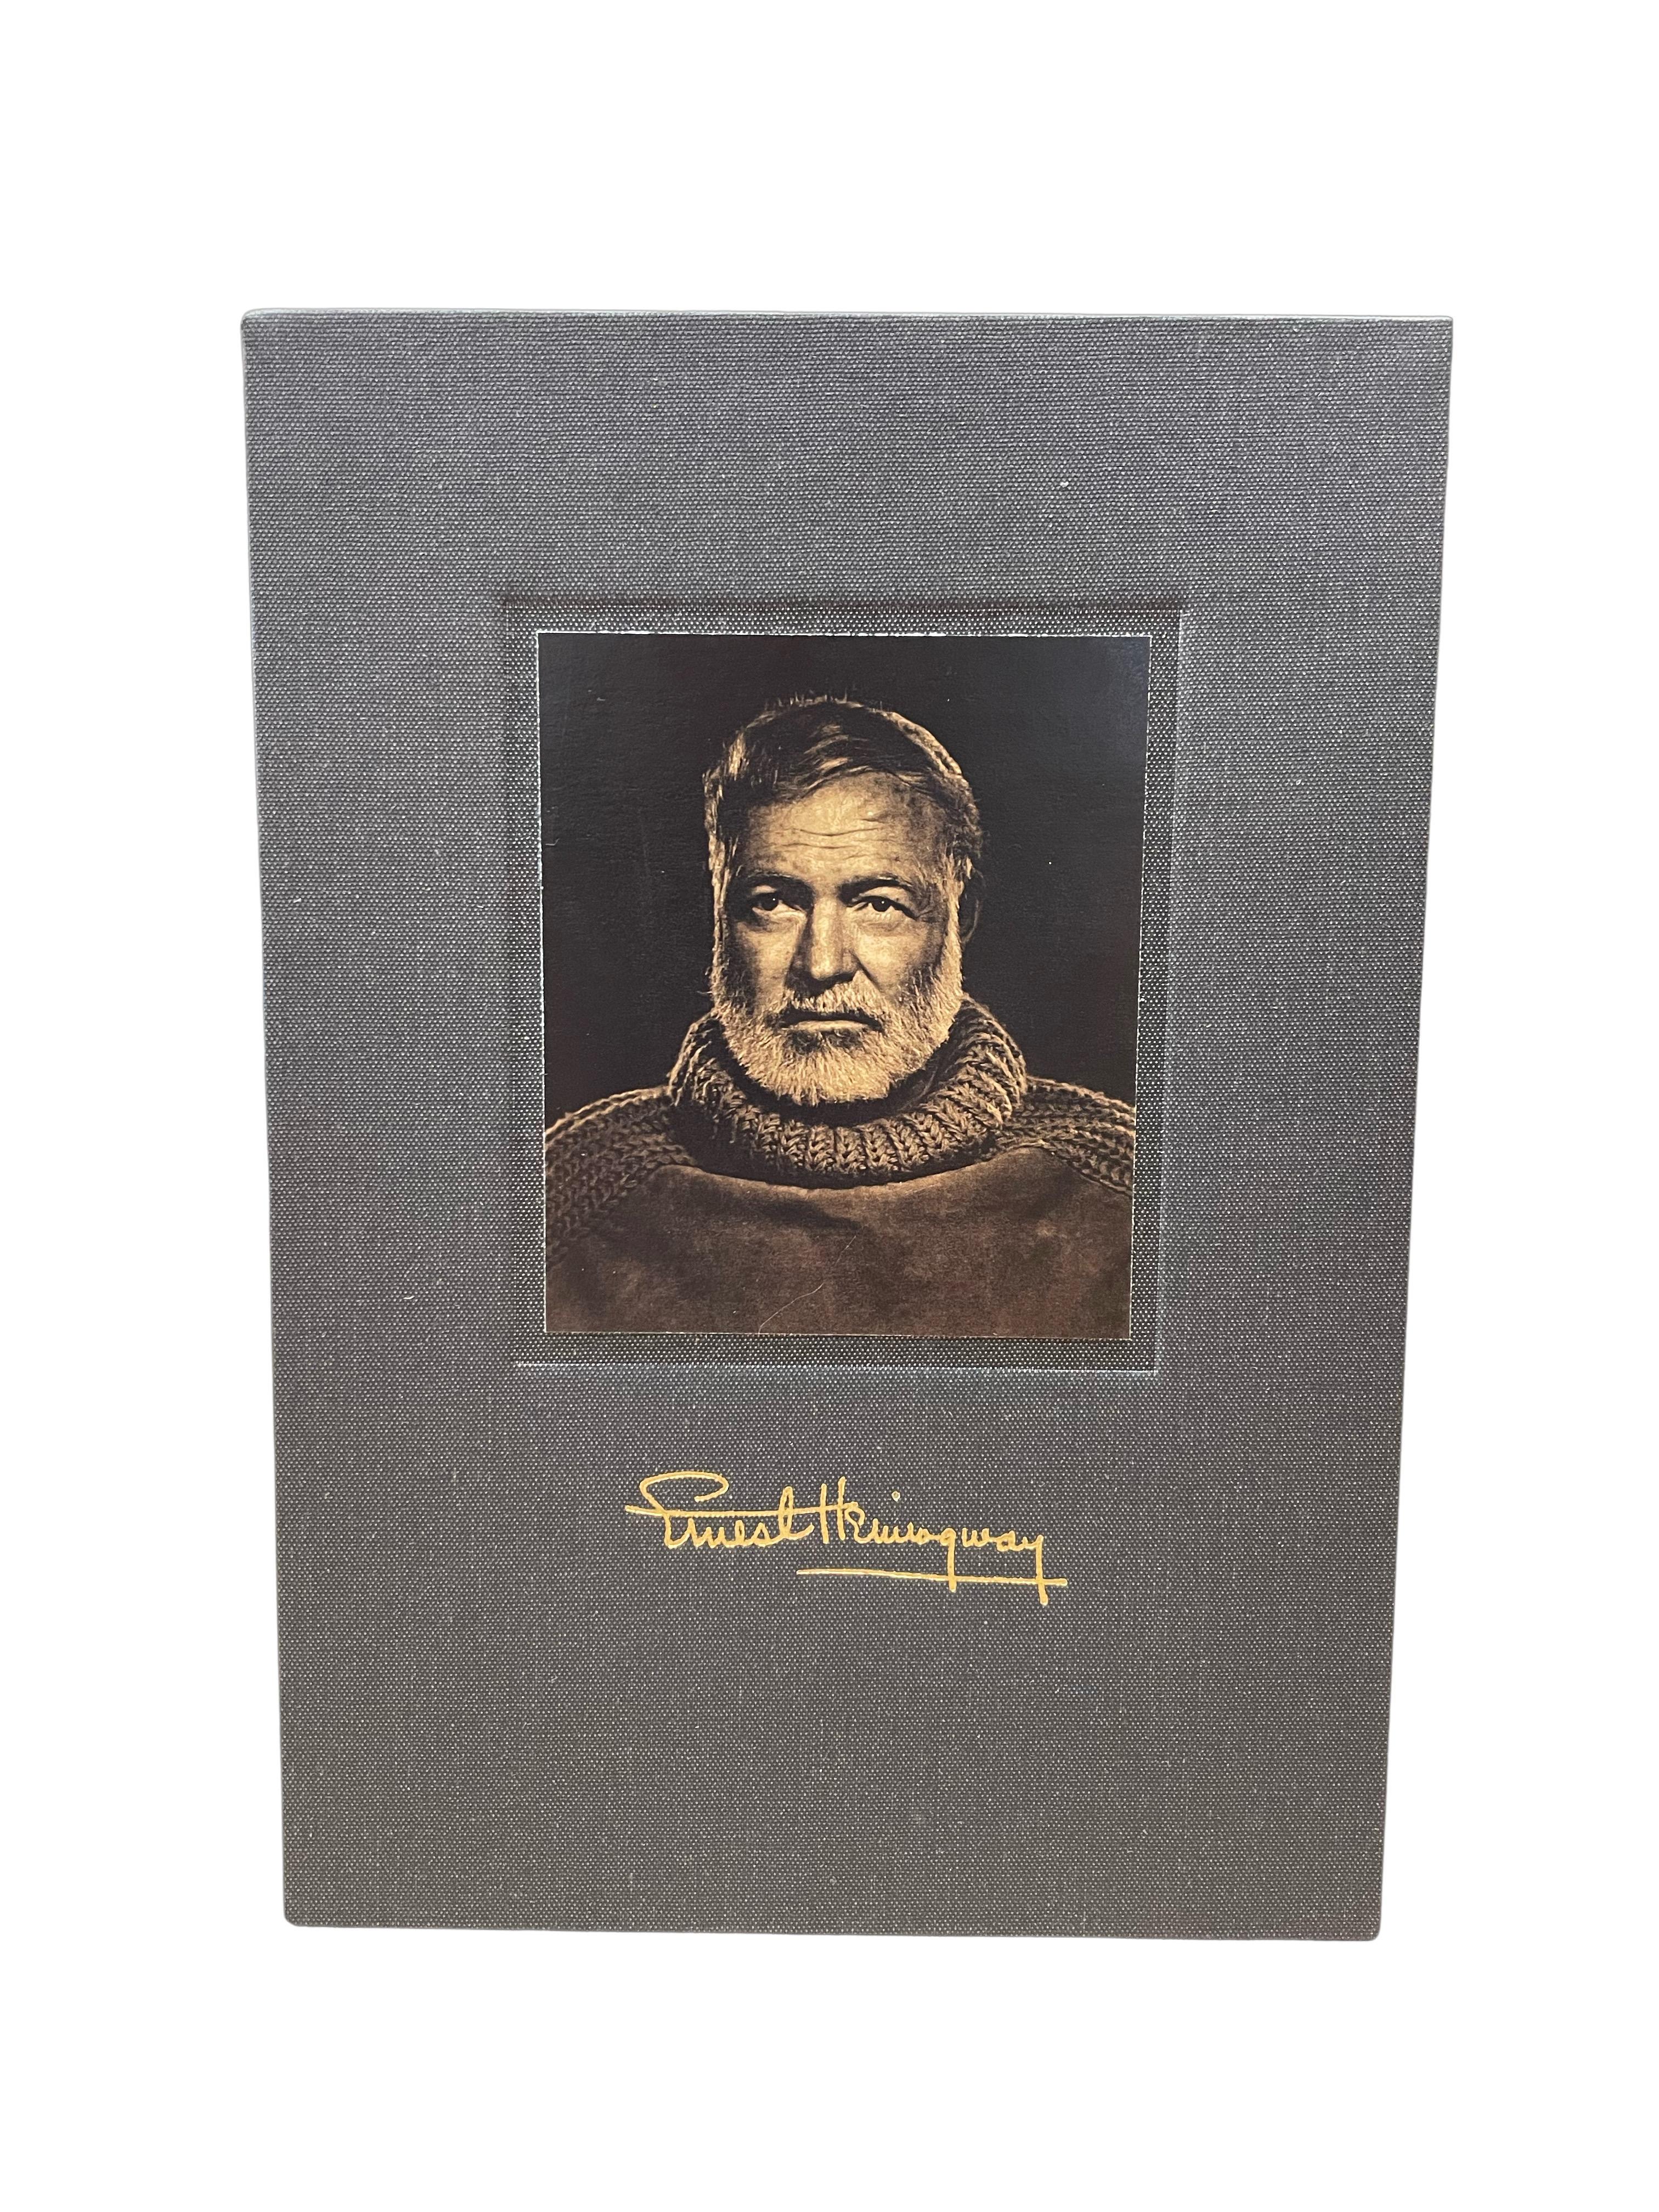 Cuir Men sans femmes, inscrit par Ernest Hemingway, édition unique, 1955 en vente